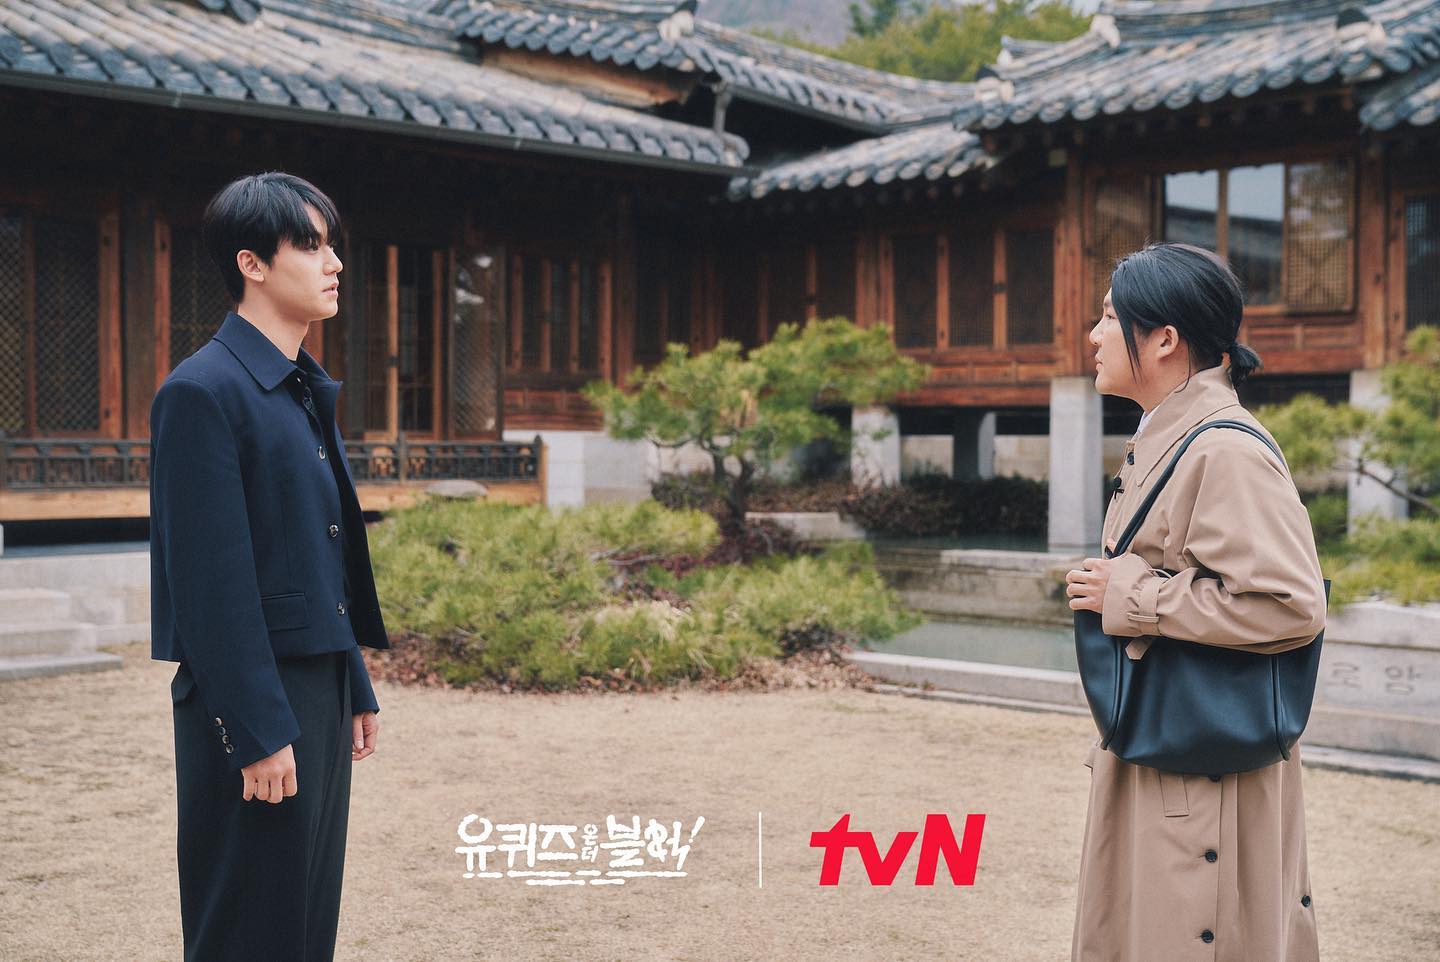 배우 이도현, ‘유 퀴즈 온 더 블럭’ 출연 
tvN 제공